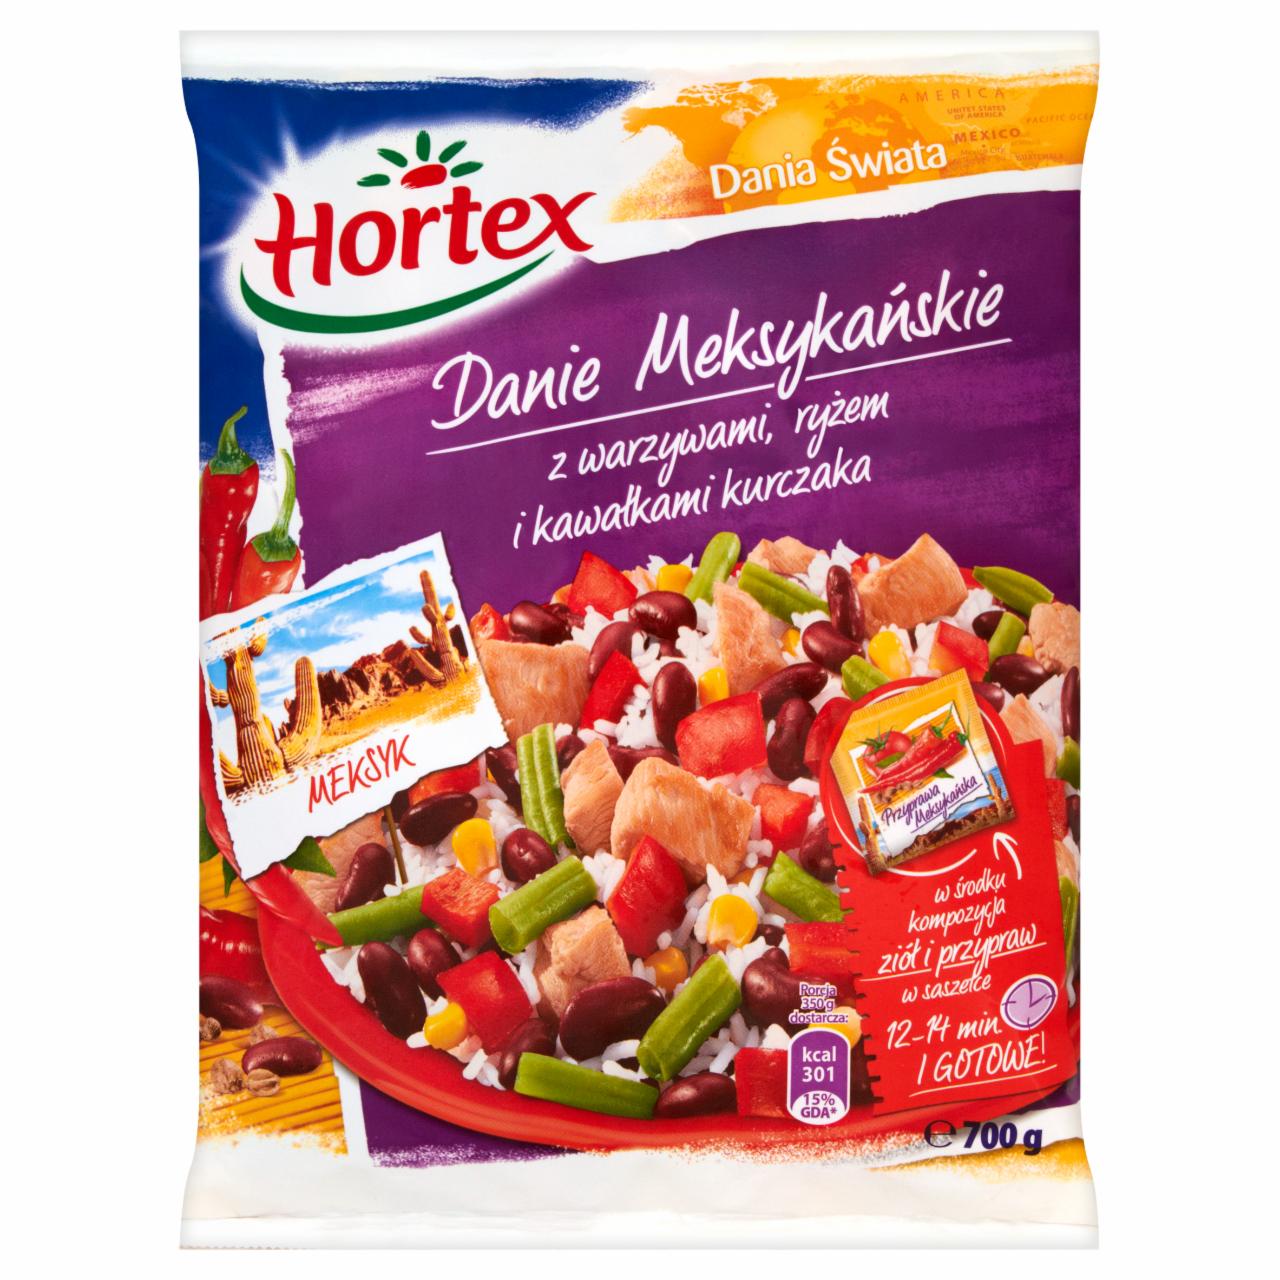 Zdjęcia - Hortex Dania Świata Danie Meksykańskie z warzywami ryżem i kawałkami kurczaka 700 g